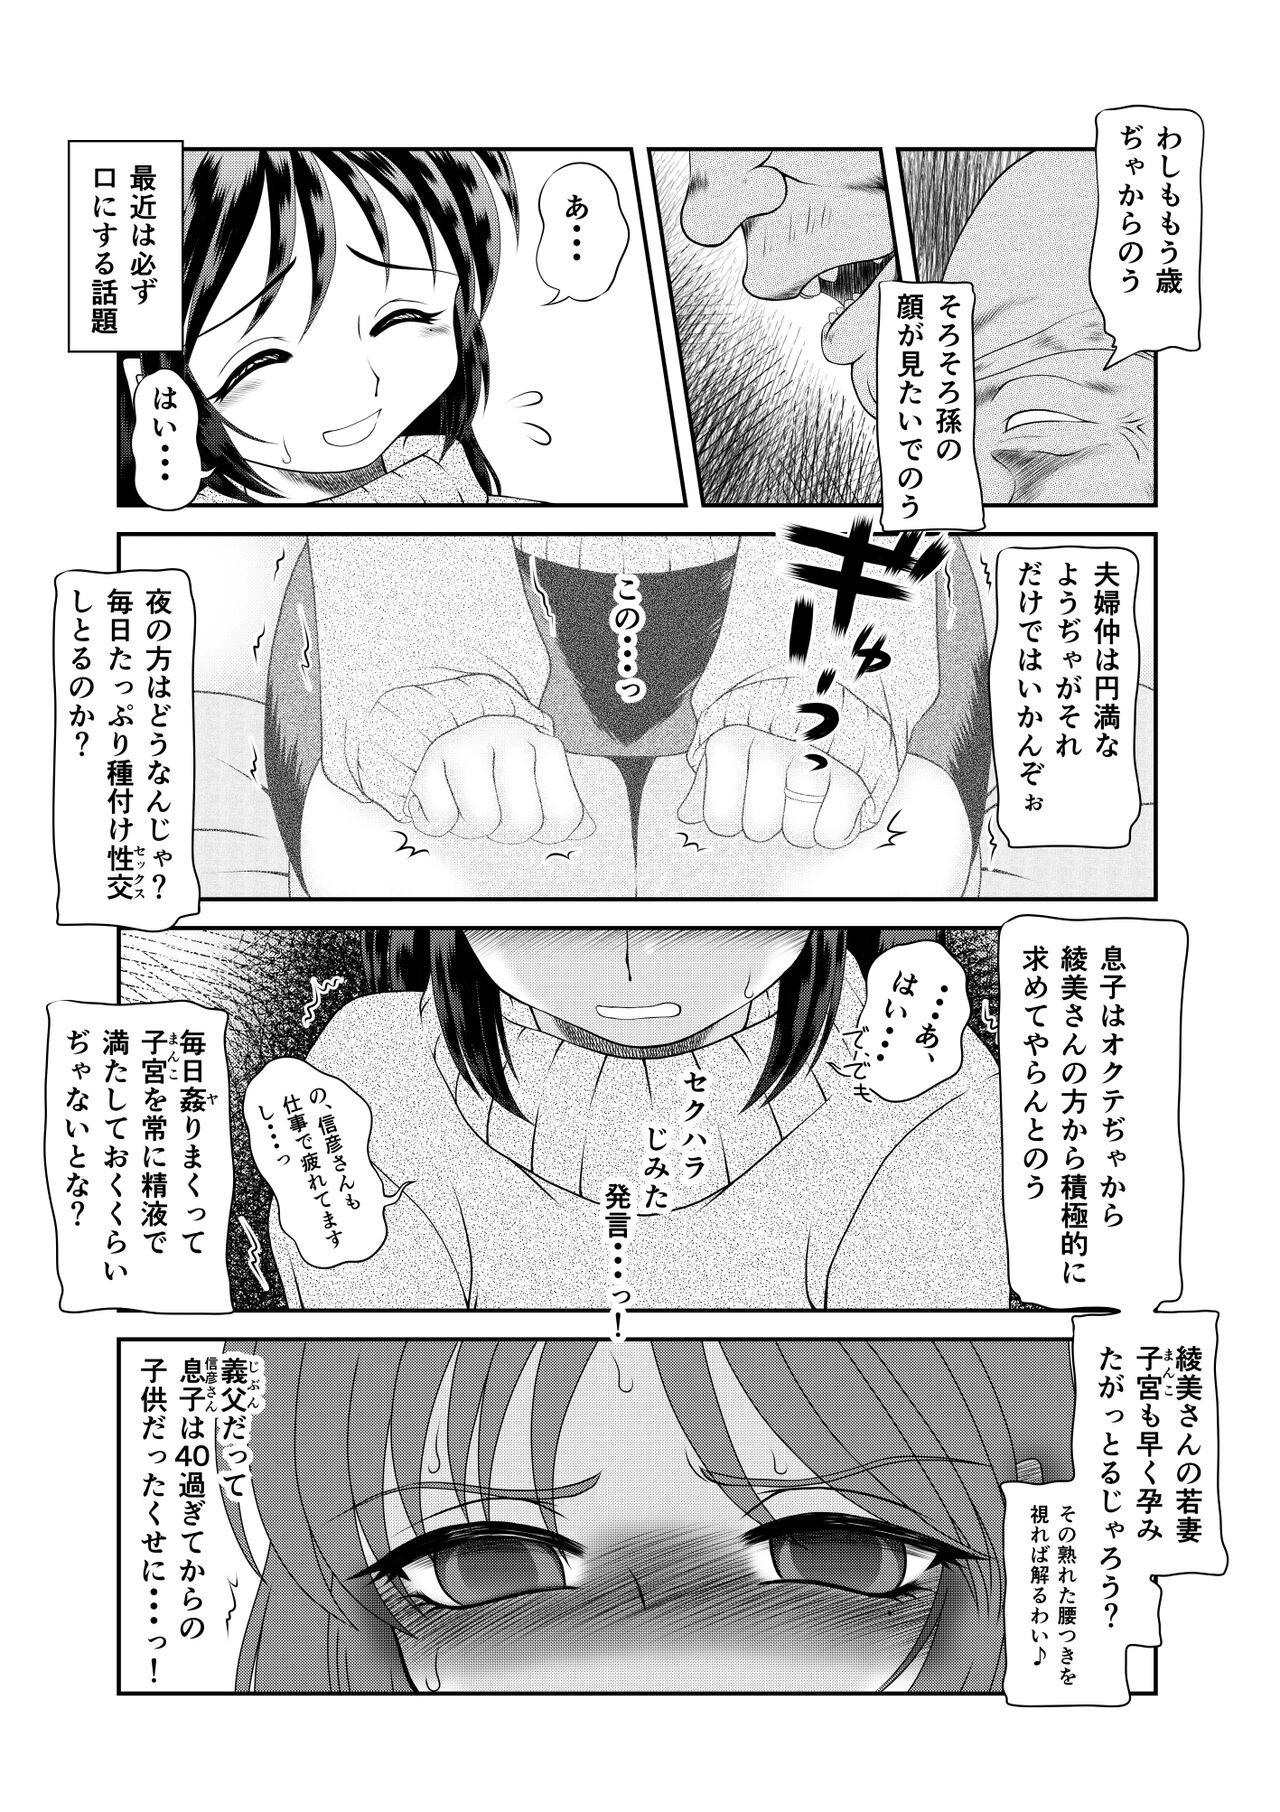 Girl Sucking Dick Watashi wa Chichi ga... Matome - Original Teamskeet - Page 6